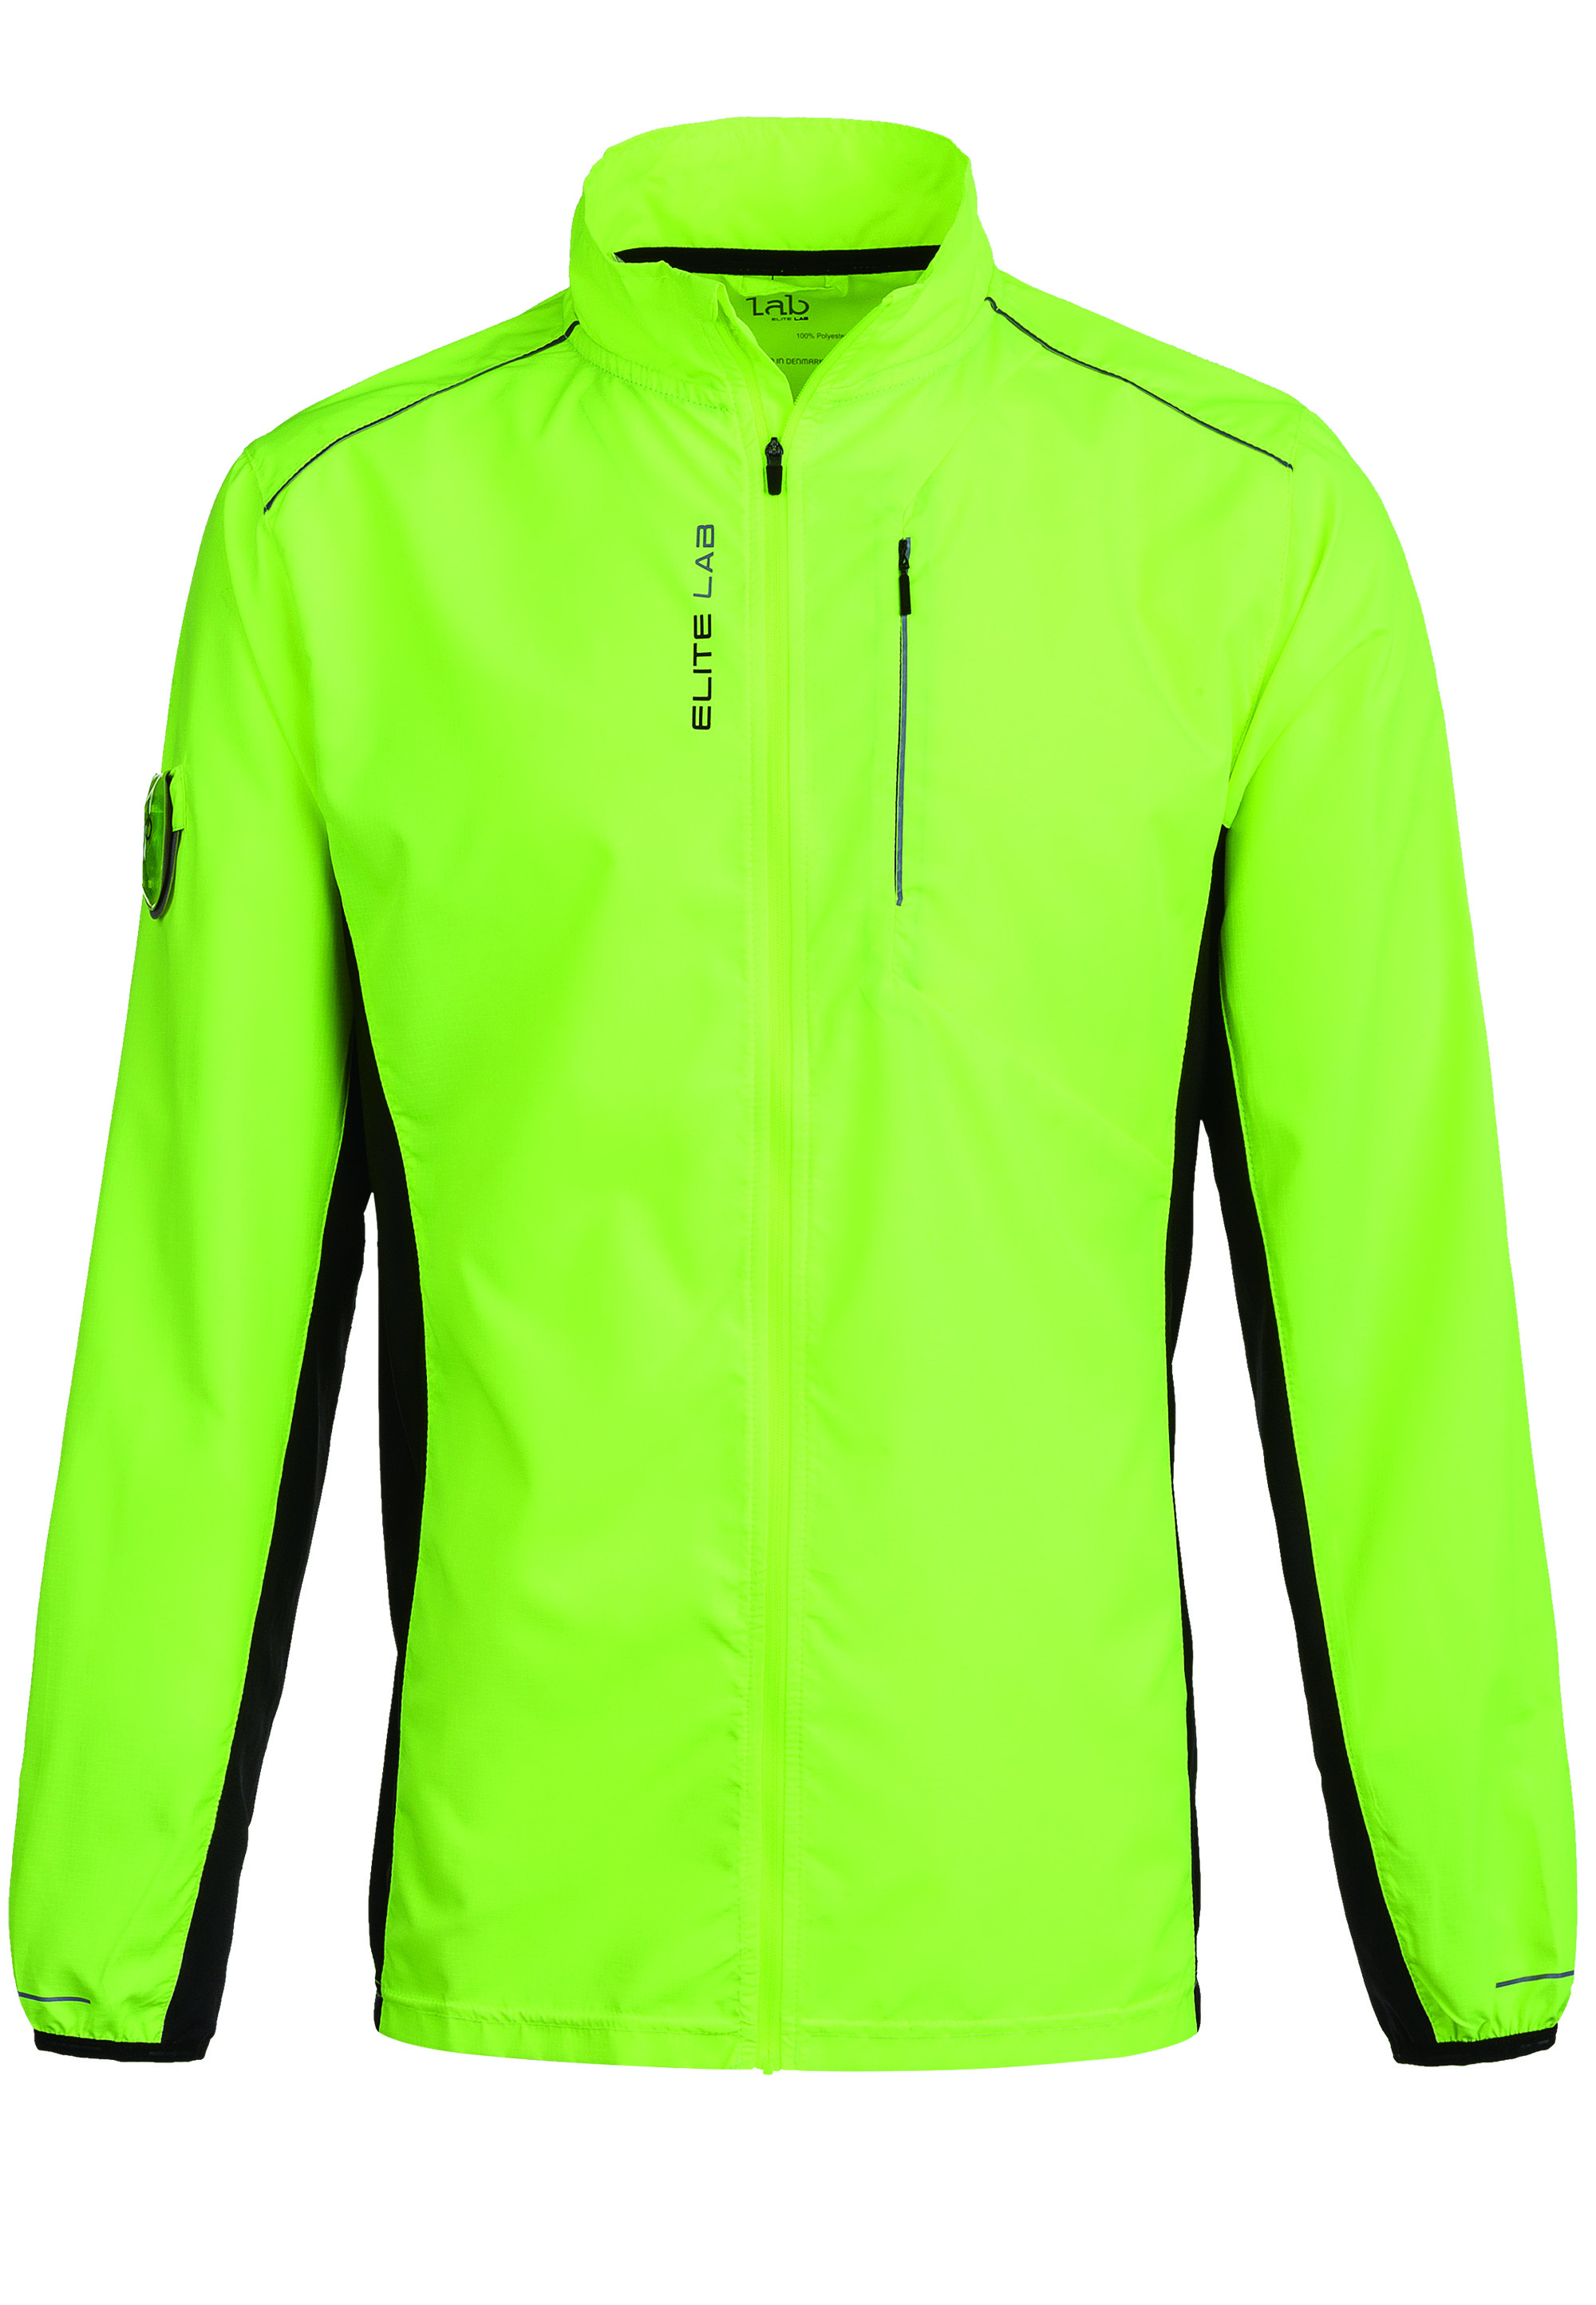 Спортивная куртка ELITE LAB Jacket Shell Heat X1 Elite, цвет 5001 Safety Yellow фляга elite safety light bottle с подсветкой 650 ml